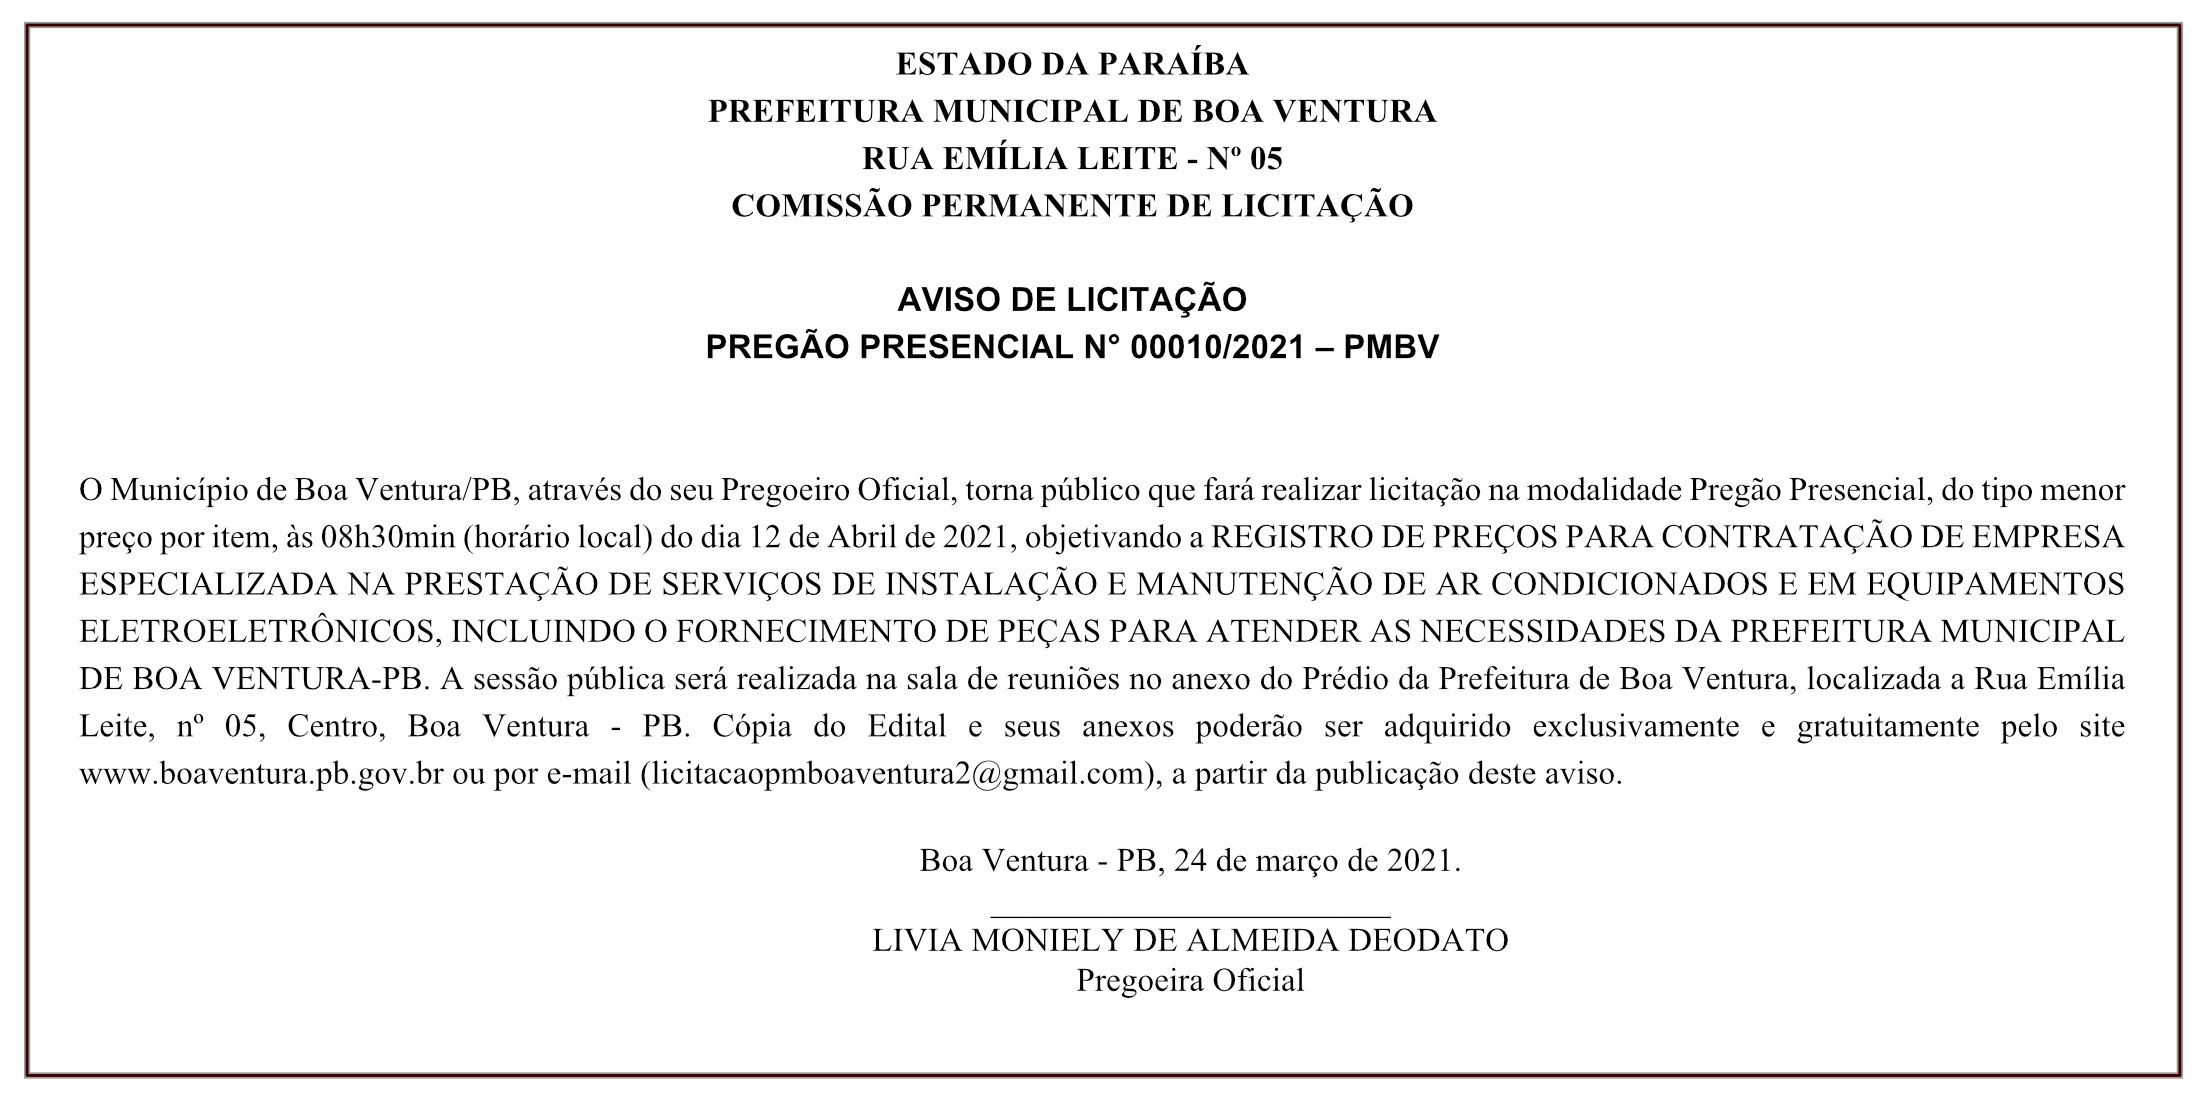 PREFEITURA MUNICIPAL DE BOA VENTURA – AVISO DE LICITAÇÃO – PREGÃO PRESENCIAL N° 00010/2021 – PMBV